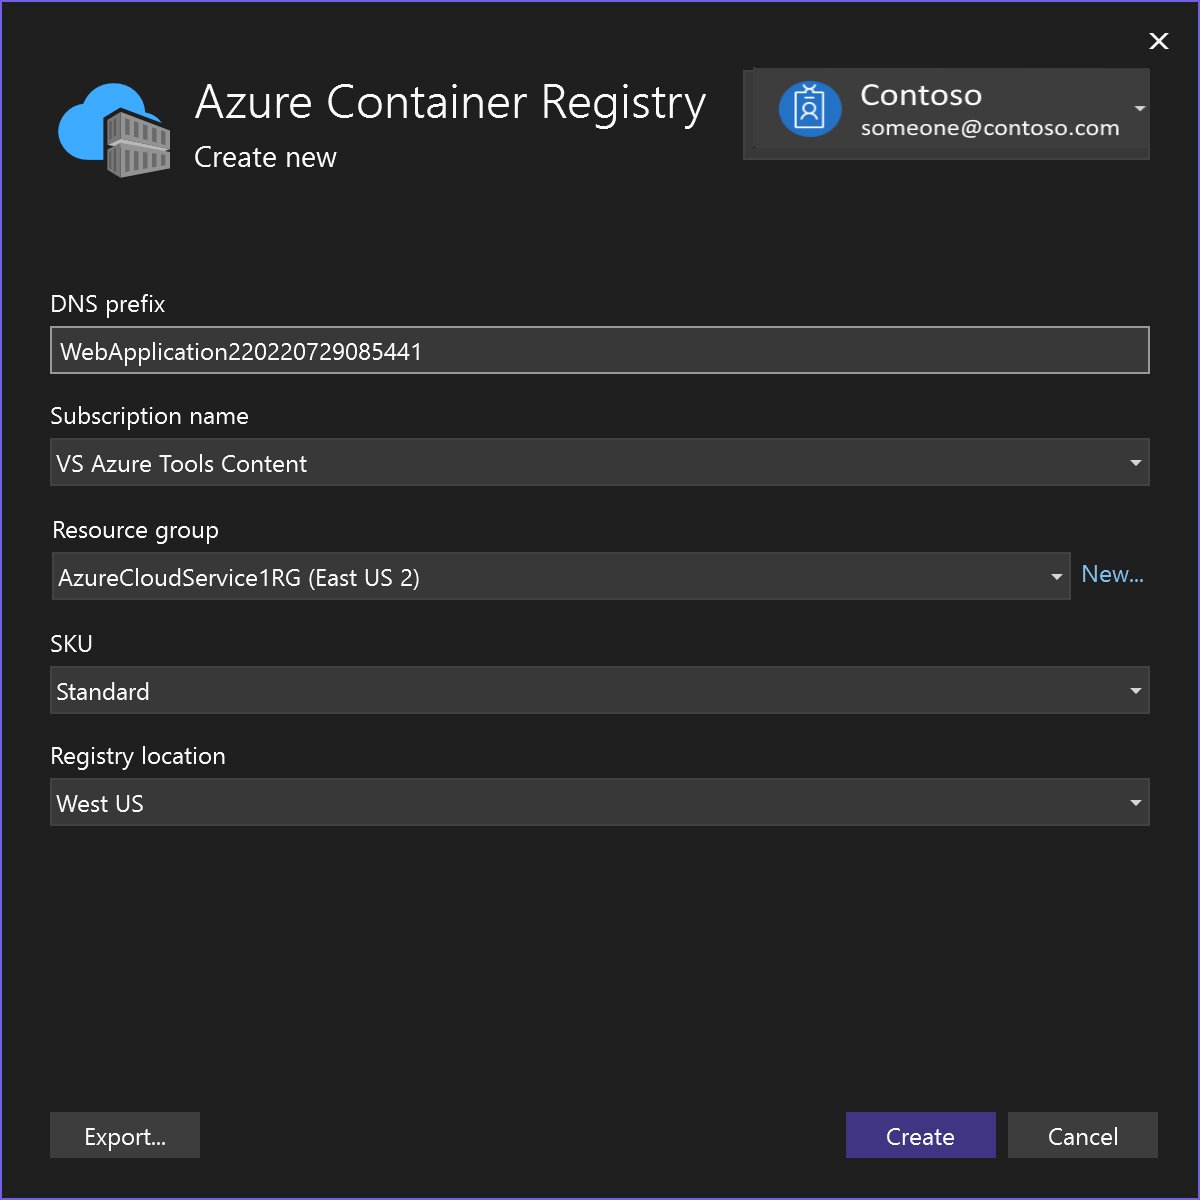 Captura de tela mostrando as opções do Registro de Contêiner do Azure.